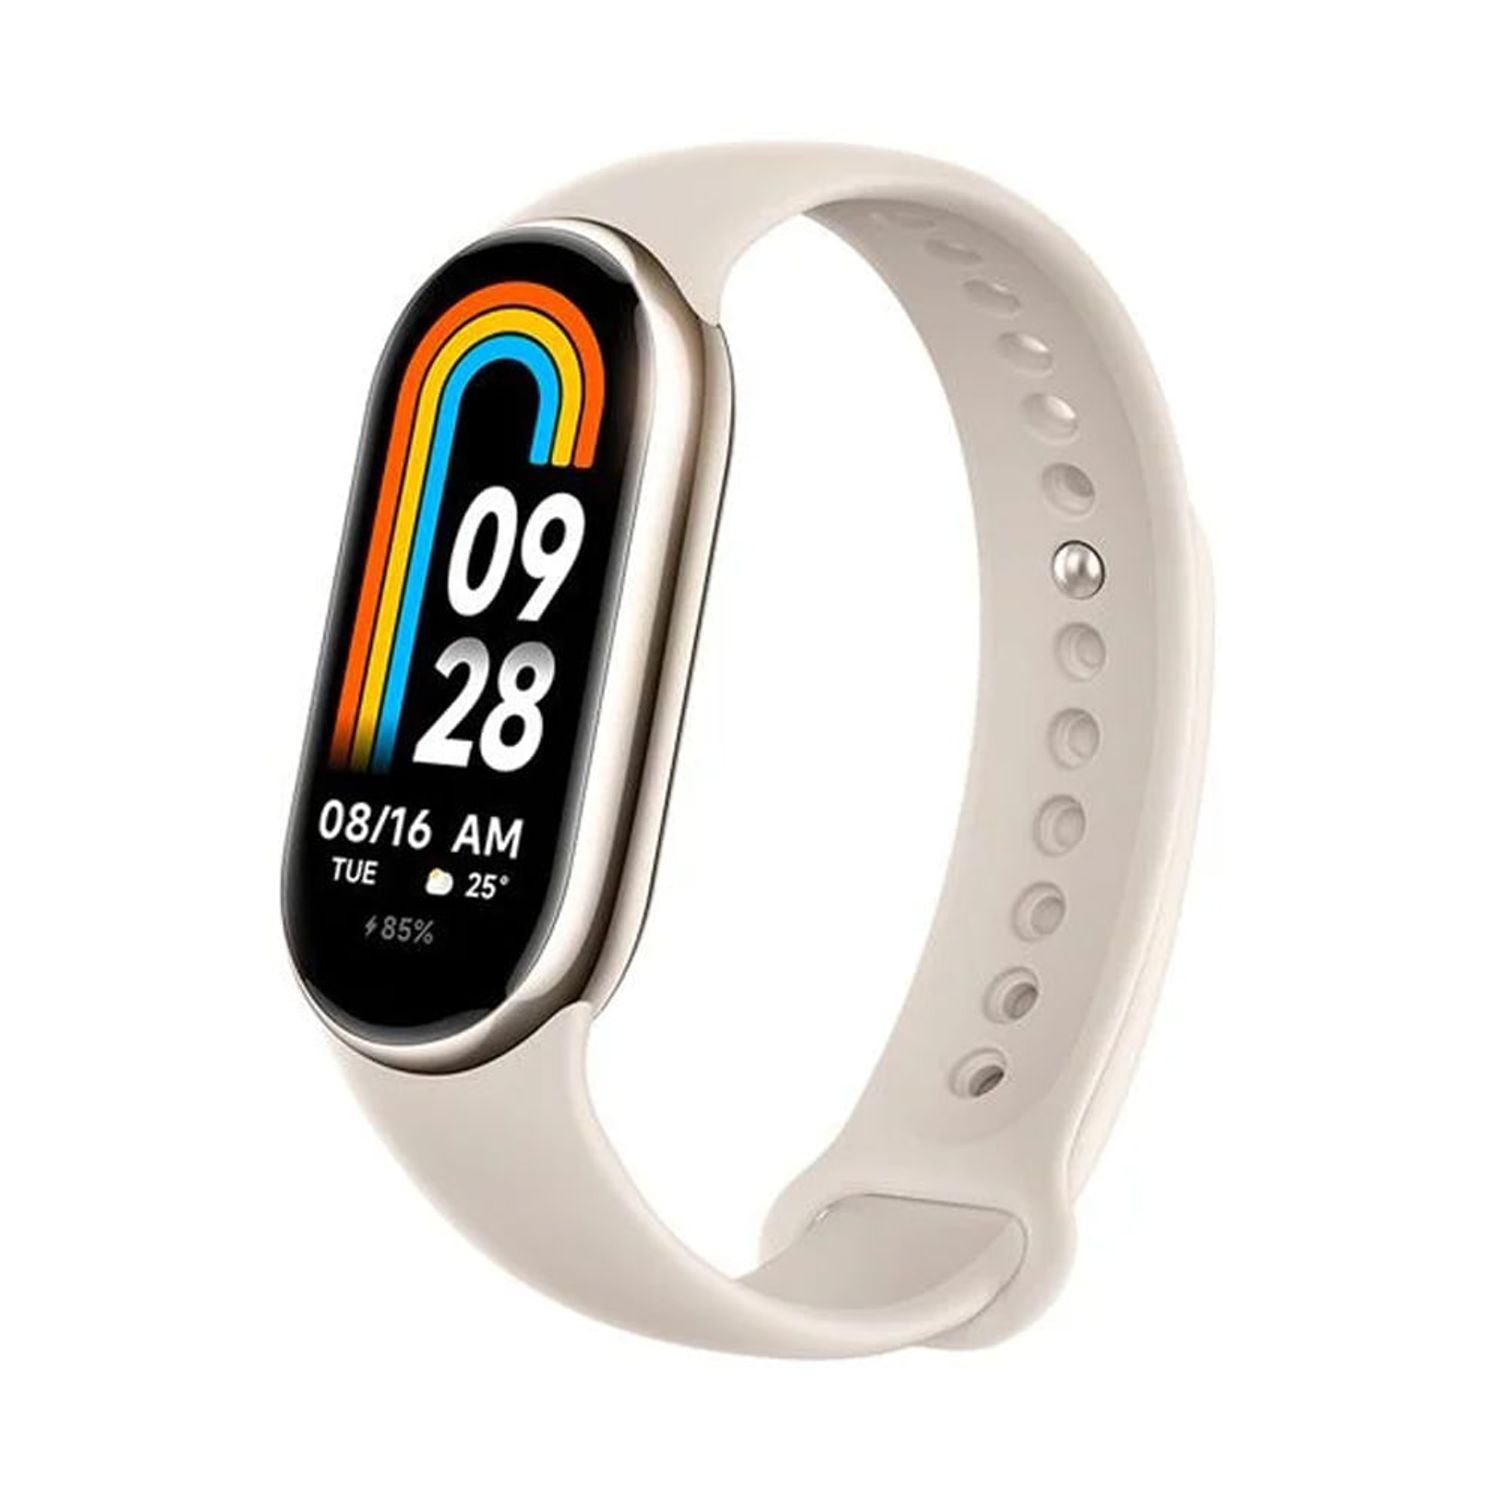 Llega la nueva Redmi Smart Band 2, la pulsera inteligente con 30 nuevas  formas de cuidar tu salud